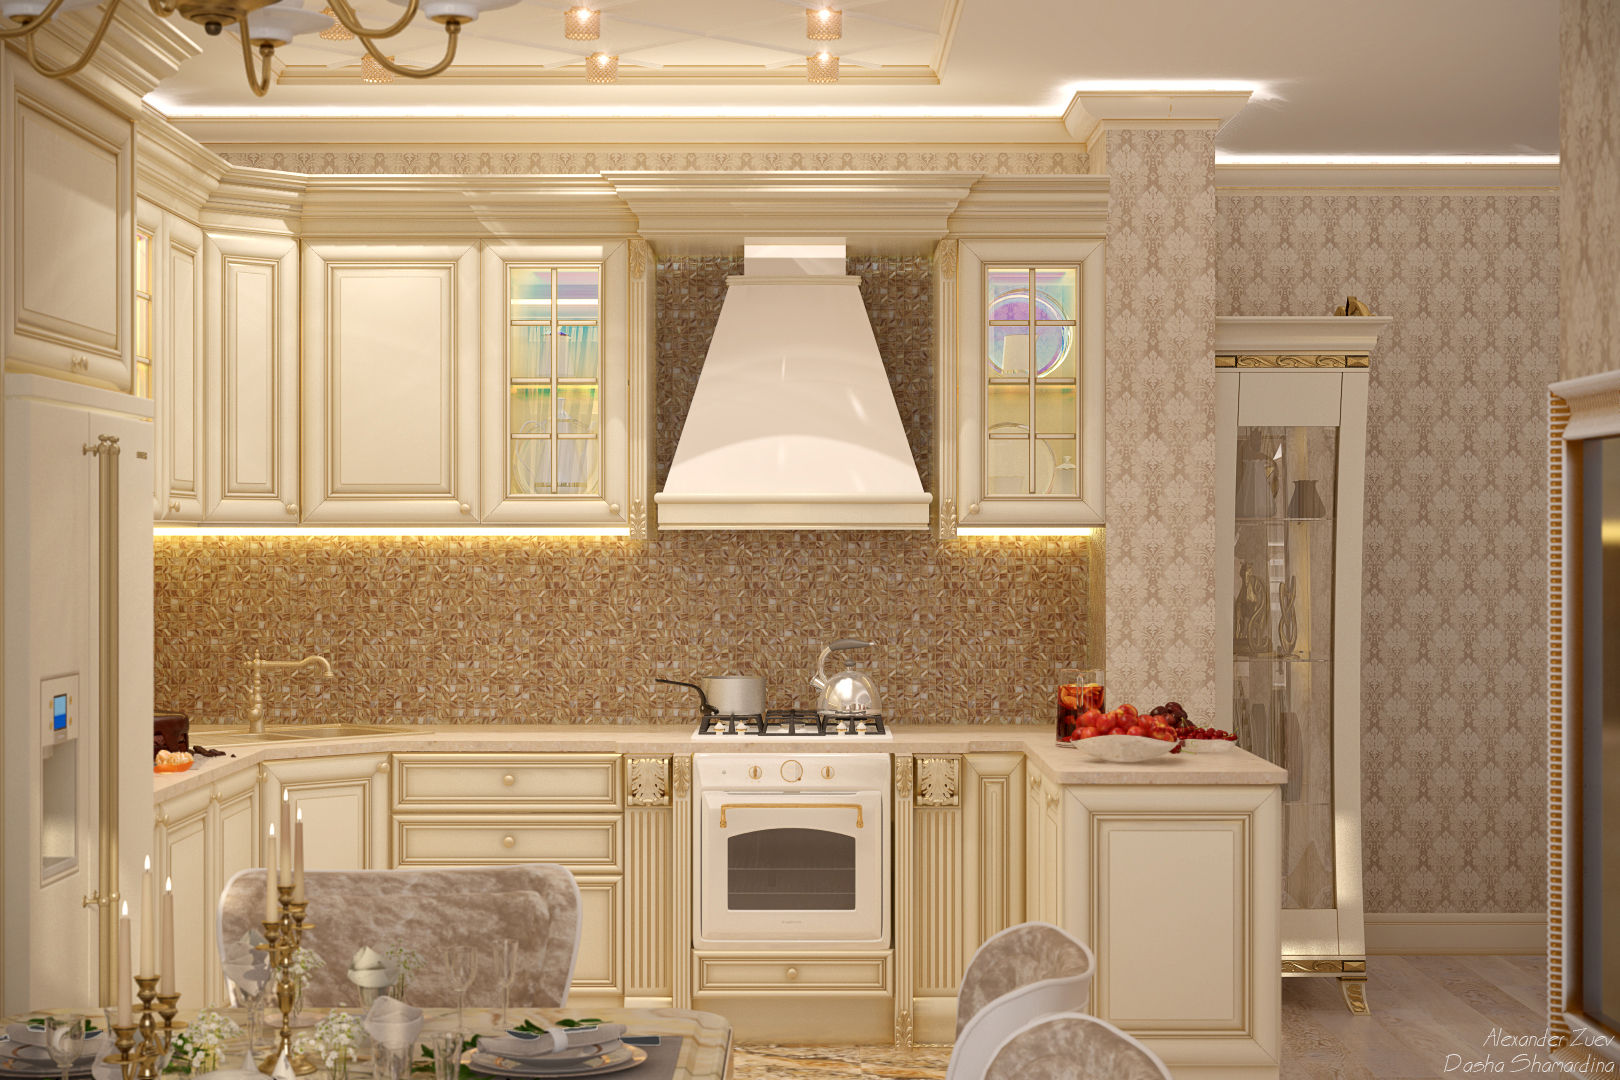 Дизайн кухни-гостиной в классическом стиле в квартире в ЖК "Ливанский дом", г.Краснодар, Студия интерьерного дизайна happy.design Студия интерьерного дизайна happy.design مطبخ